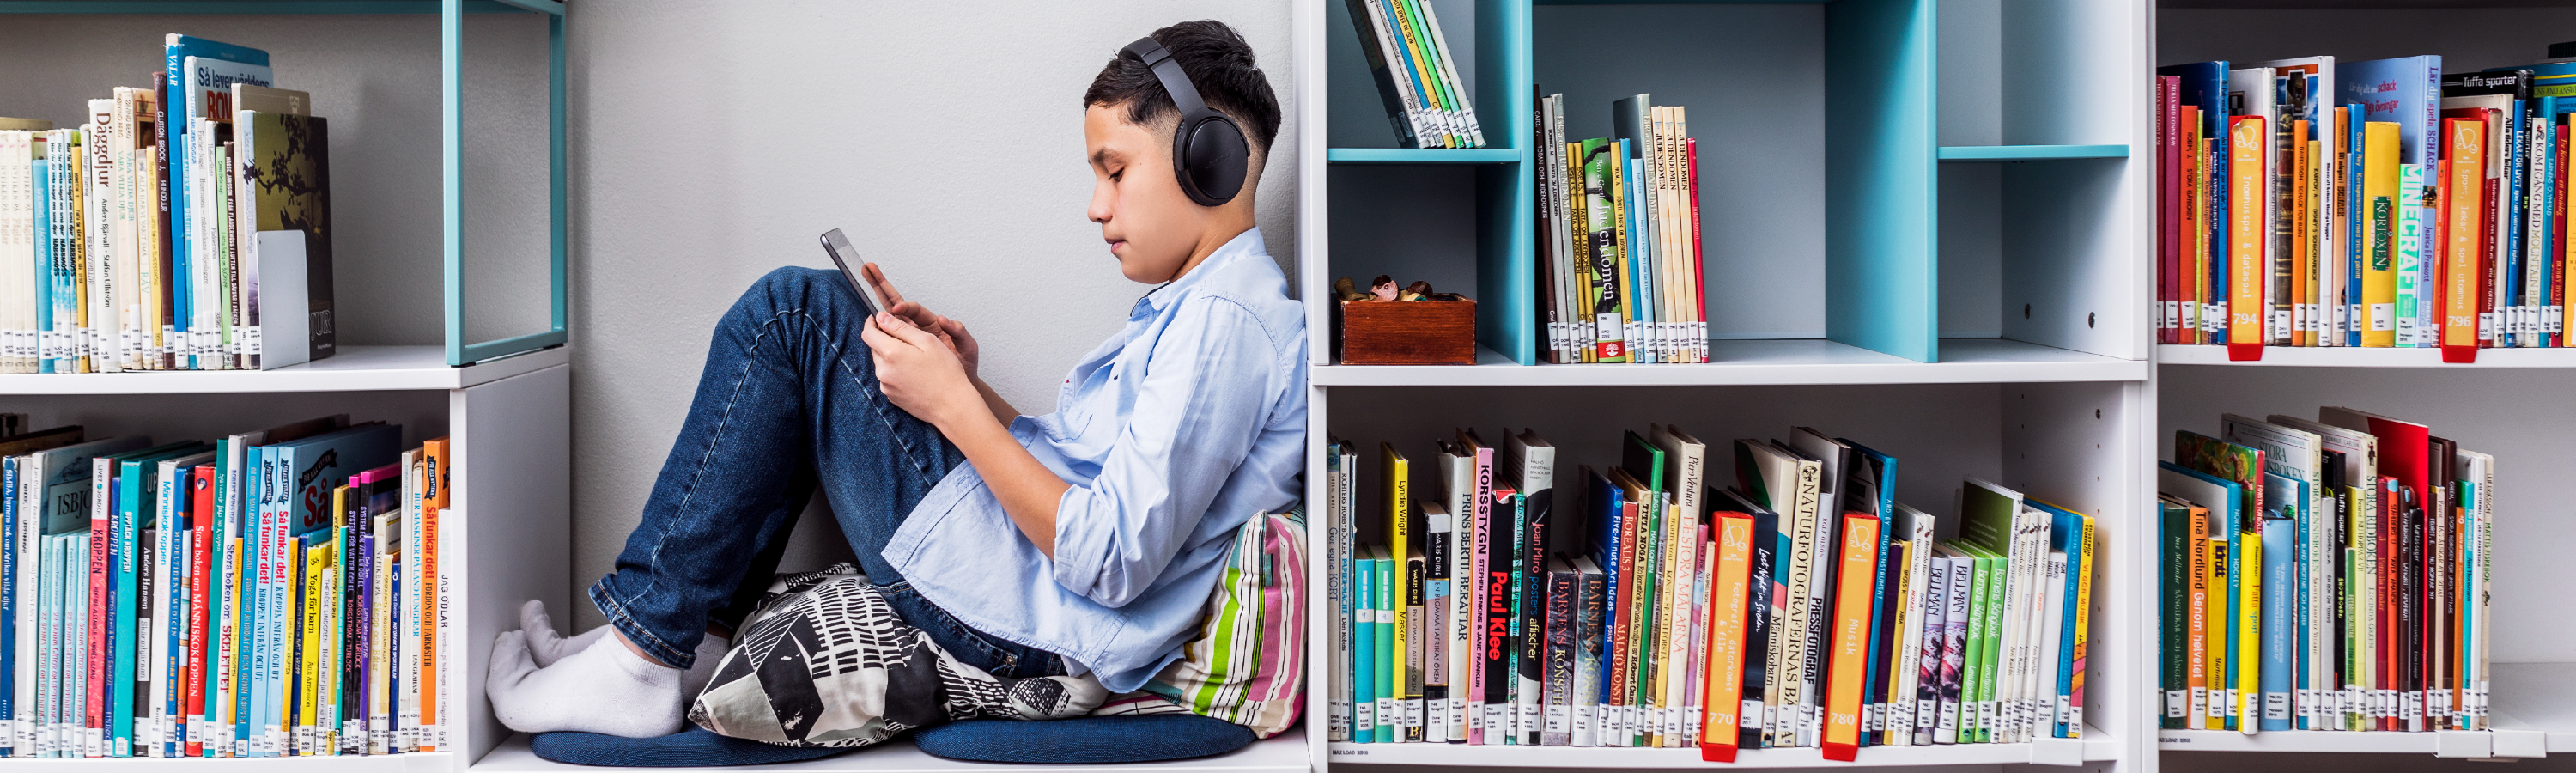 En pojke sitter i en bokhylla omgiven av böcker och läser på en surfplatta. Han har på sig hörlurar.